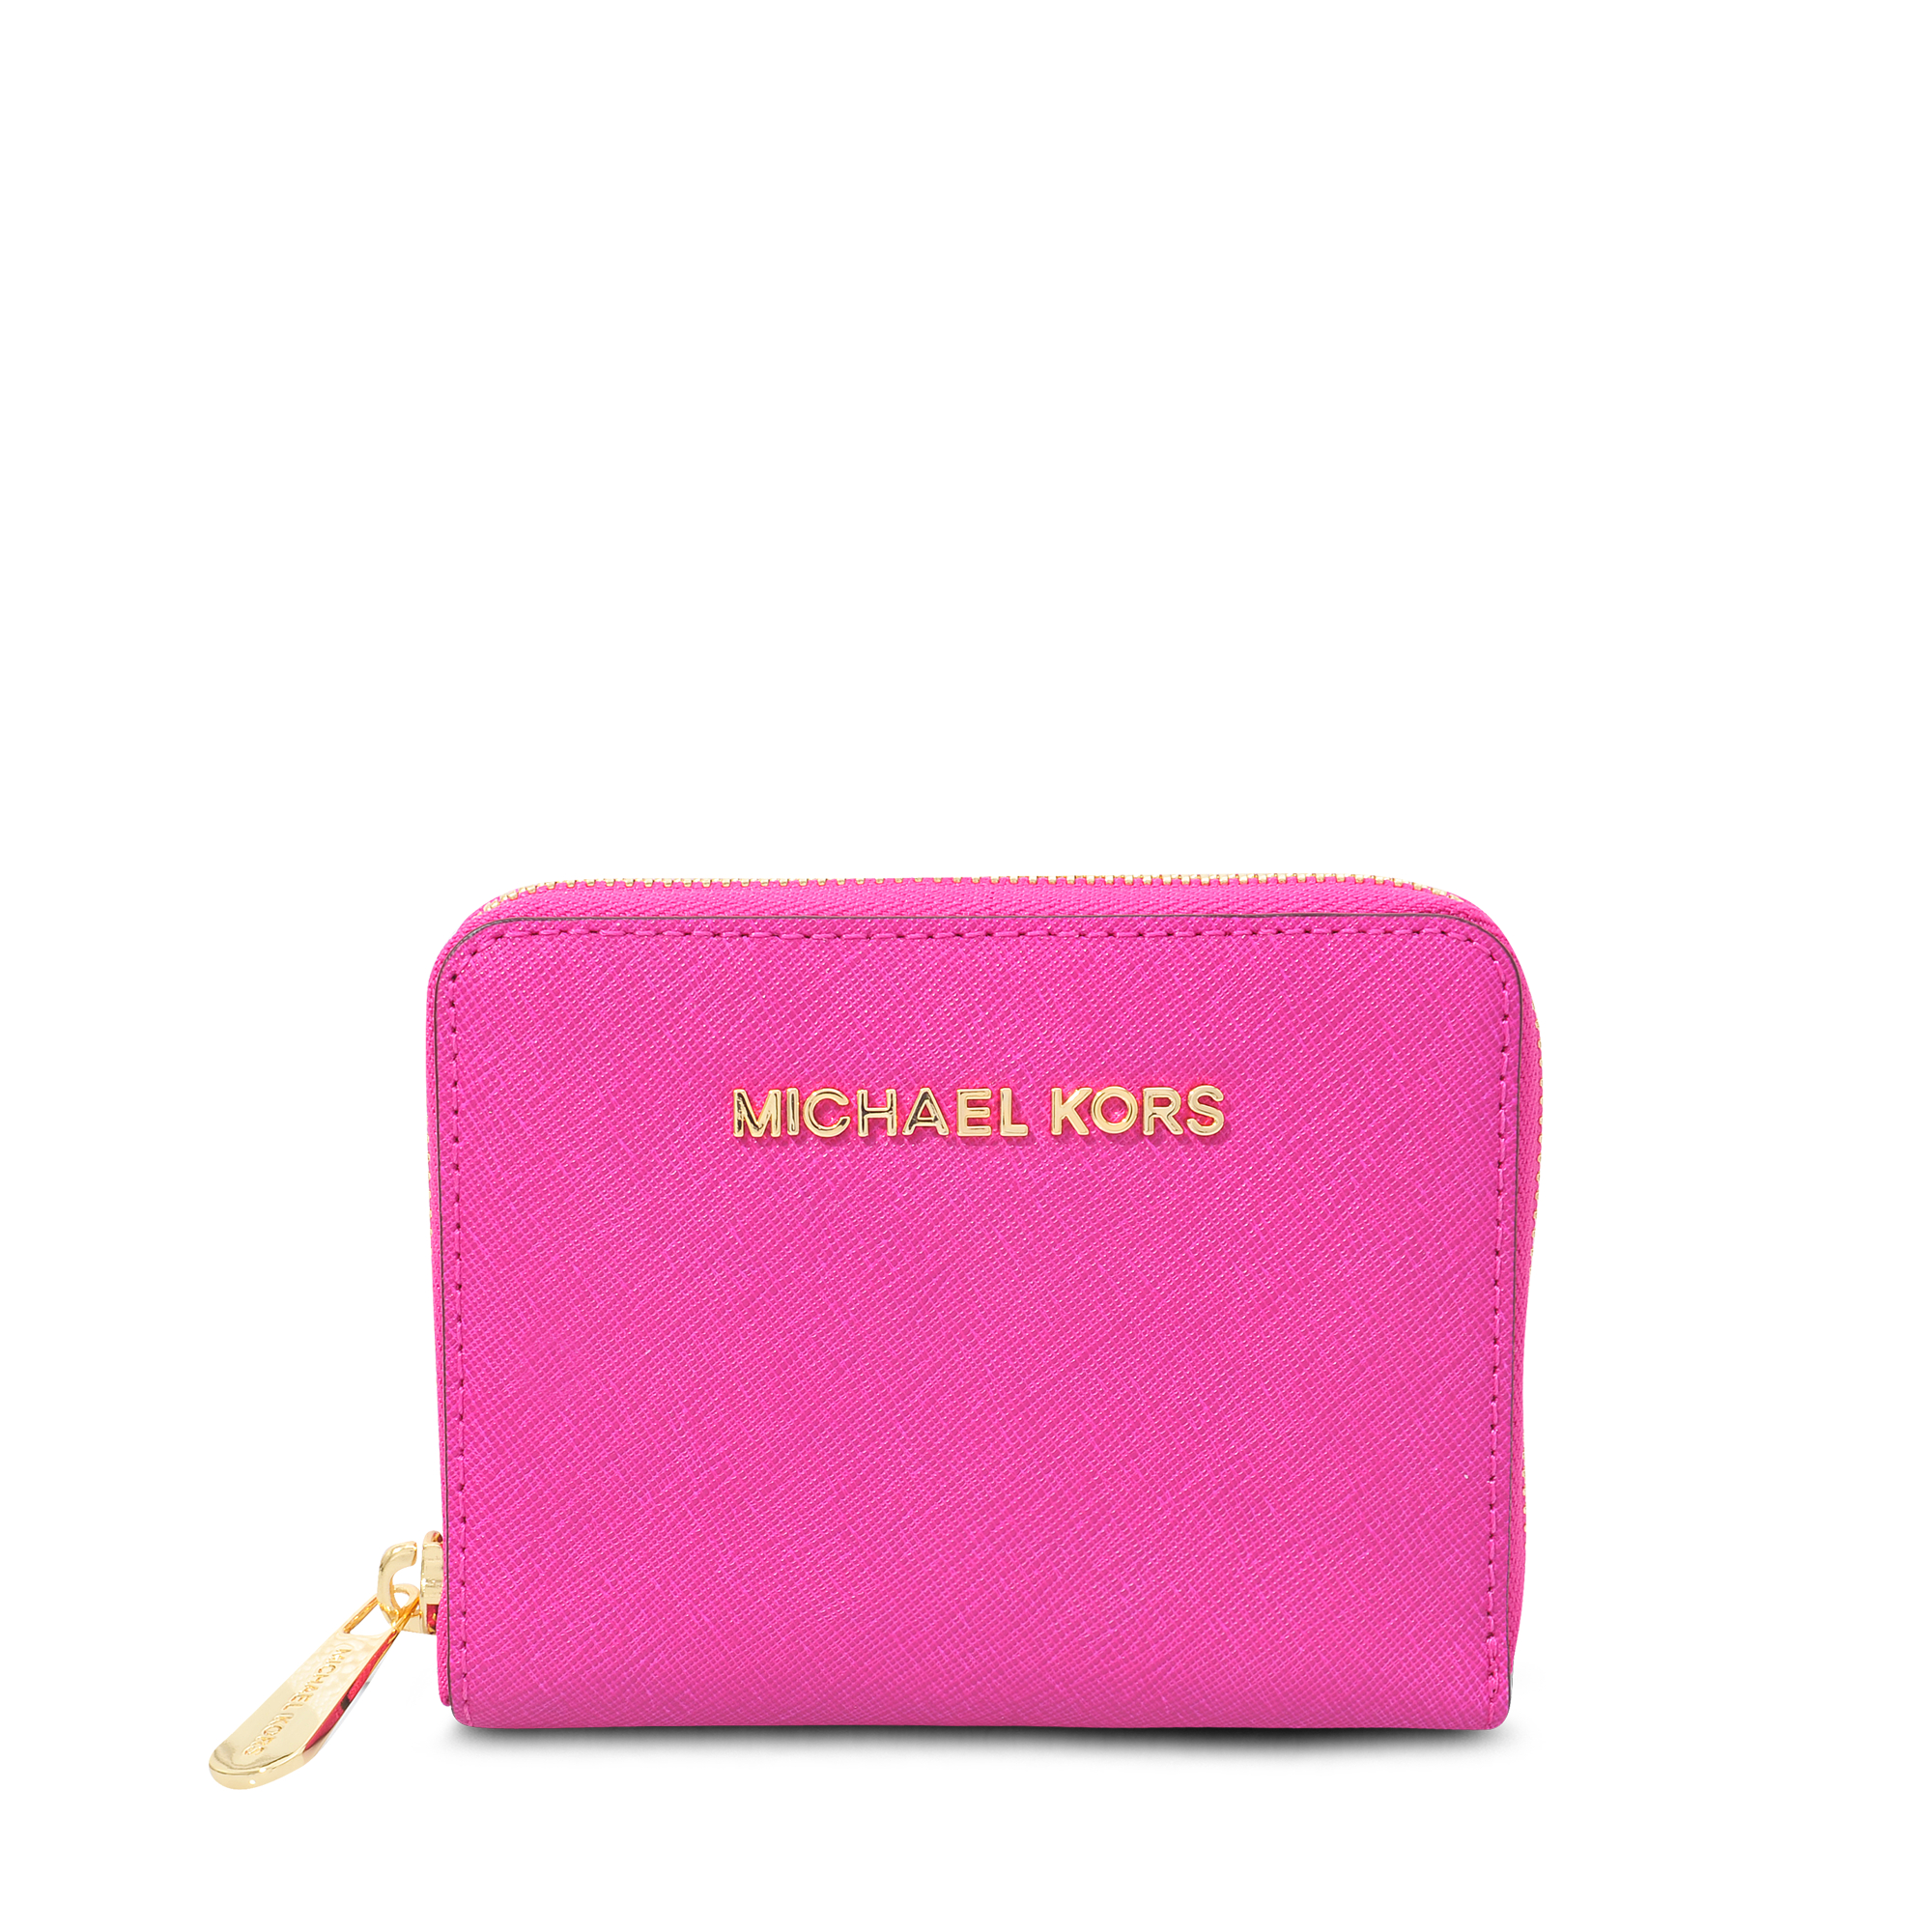 Michael Kors Zip Around Medium Wallet in Pink - Lyst